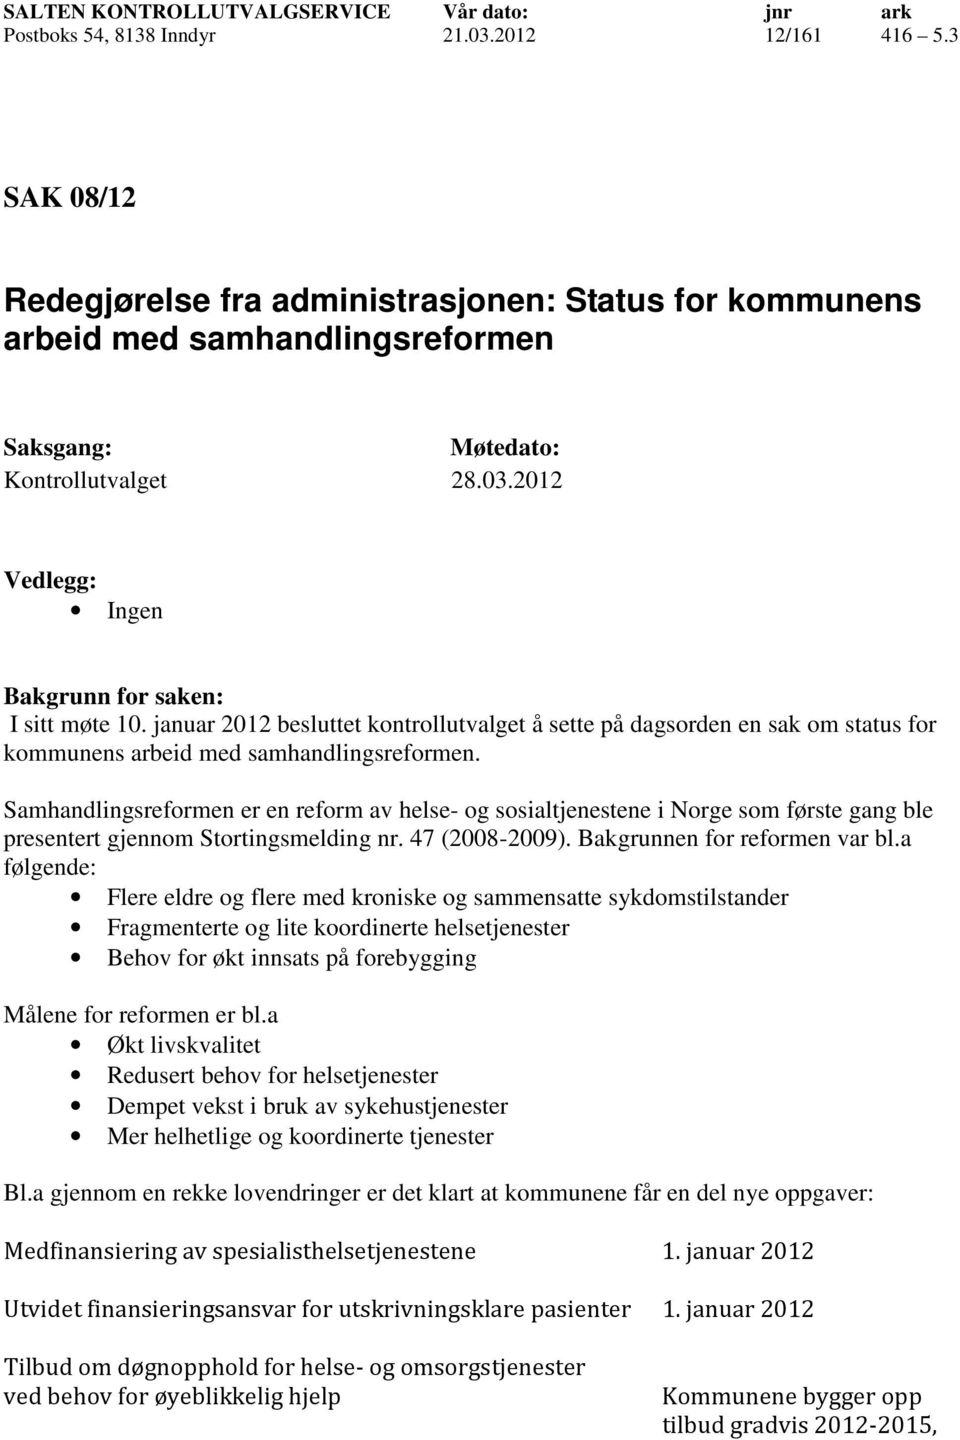 Samhandlingsreformen er en reform av helse- og sosialtjenestene i Norge som første gang ble presentert gjennom Stortingsmelding nr. 47 (2008-2009). Bakgrunnen for reformen var bl.